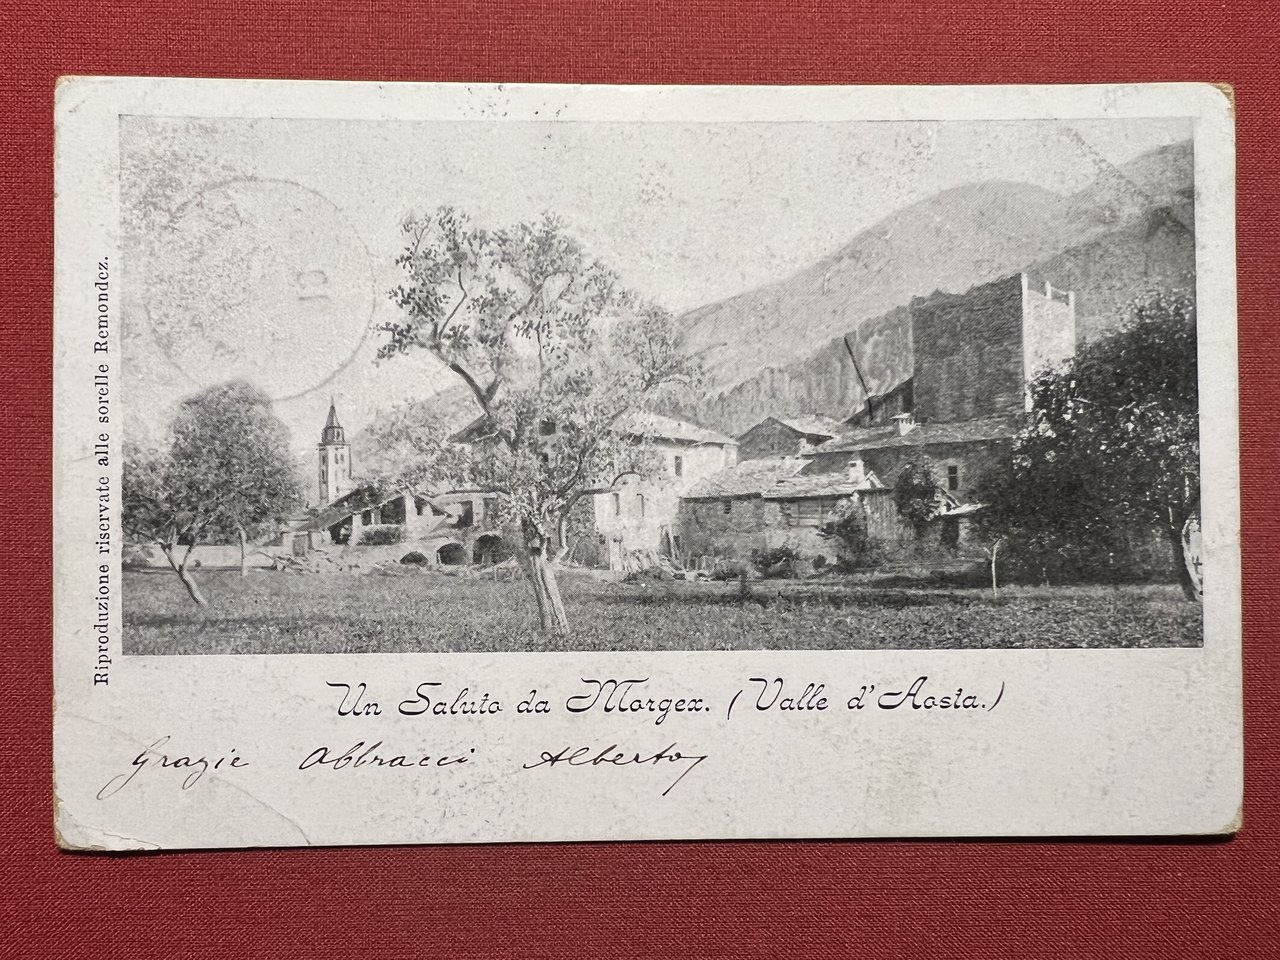 Cartolina - Un Saluto da Morgex ( Valle d'Aosta ) …